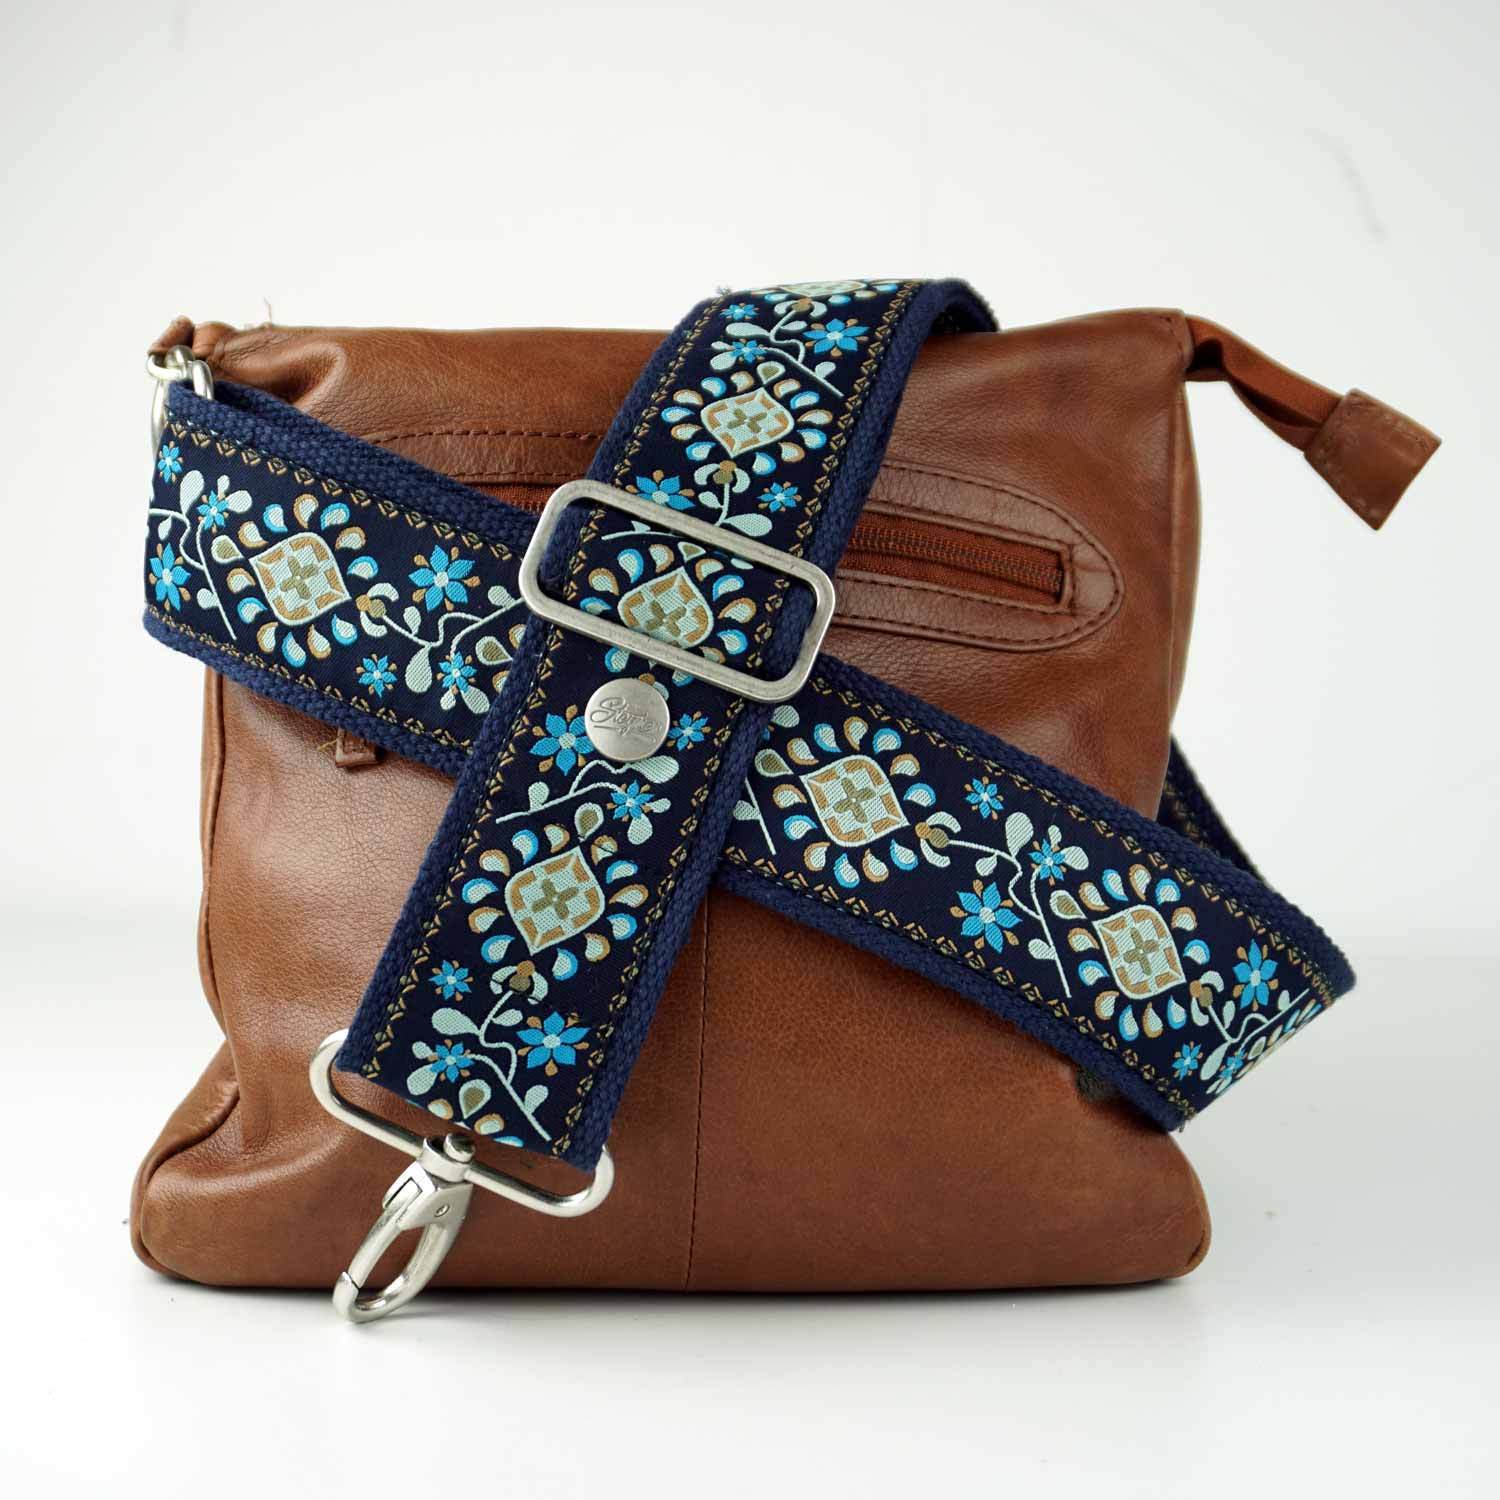 Schulterriemen bunt in blau mit Blumen Muster auf einer Handtasche